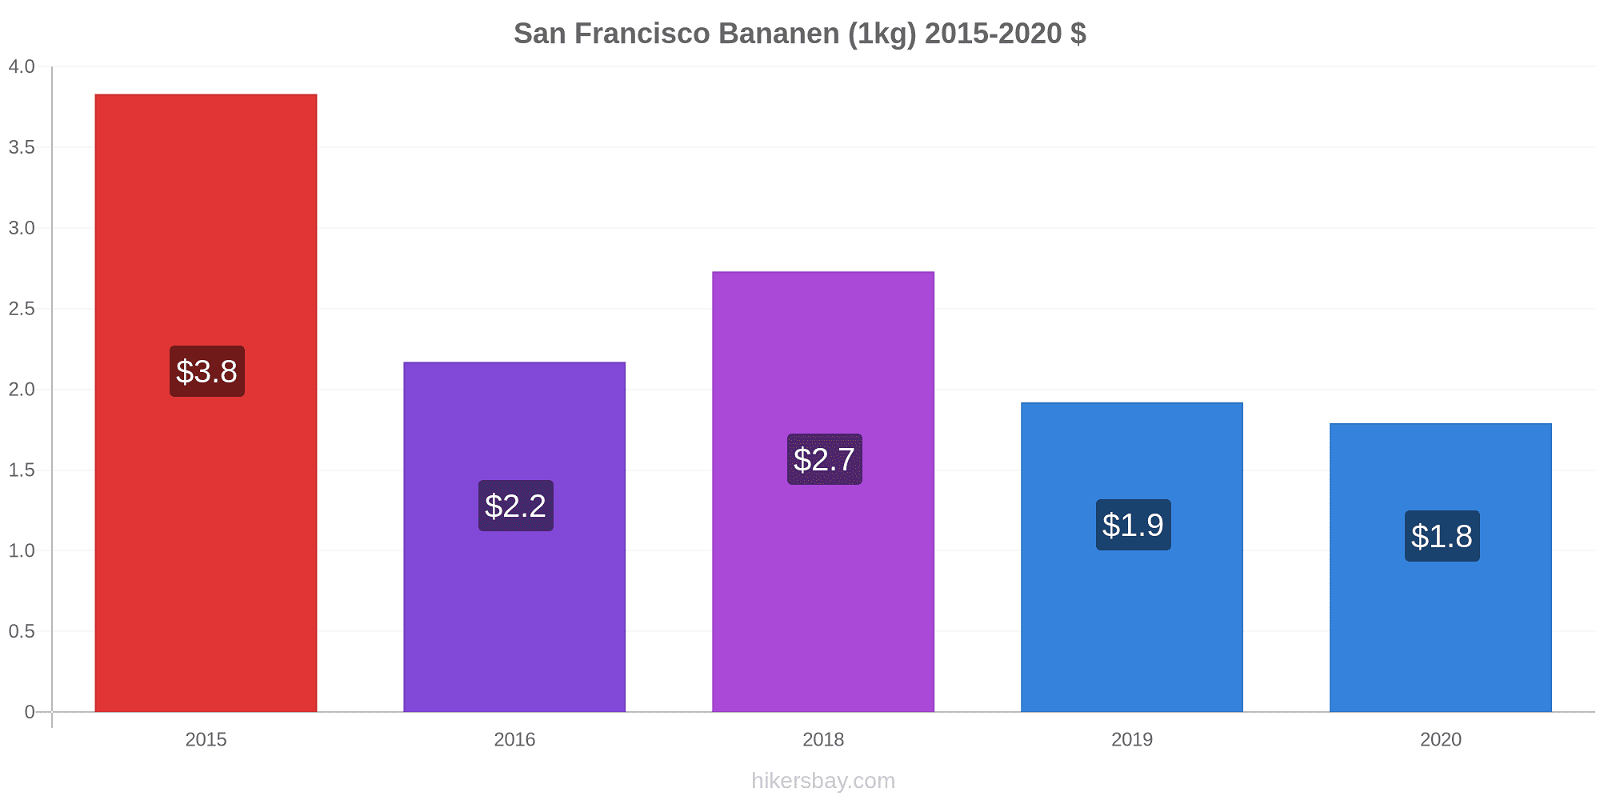 San Francisco prijswijzigingen Banaan (1kg) hikersbay.com